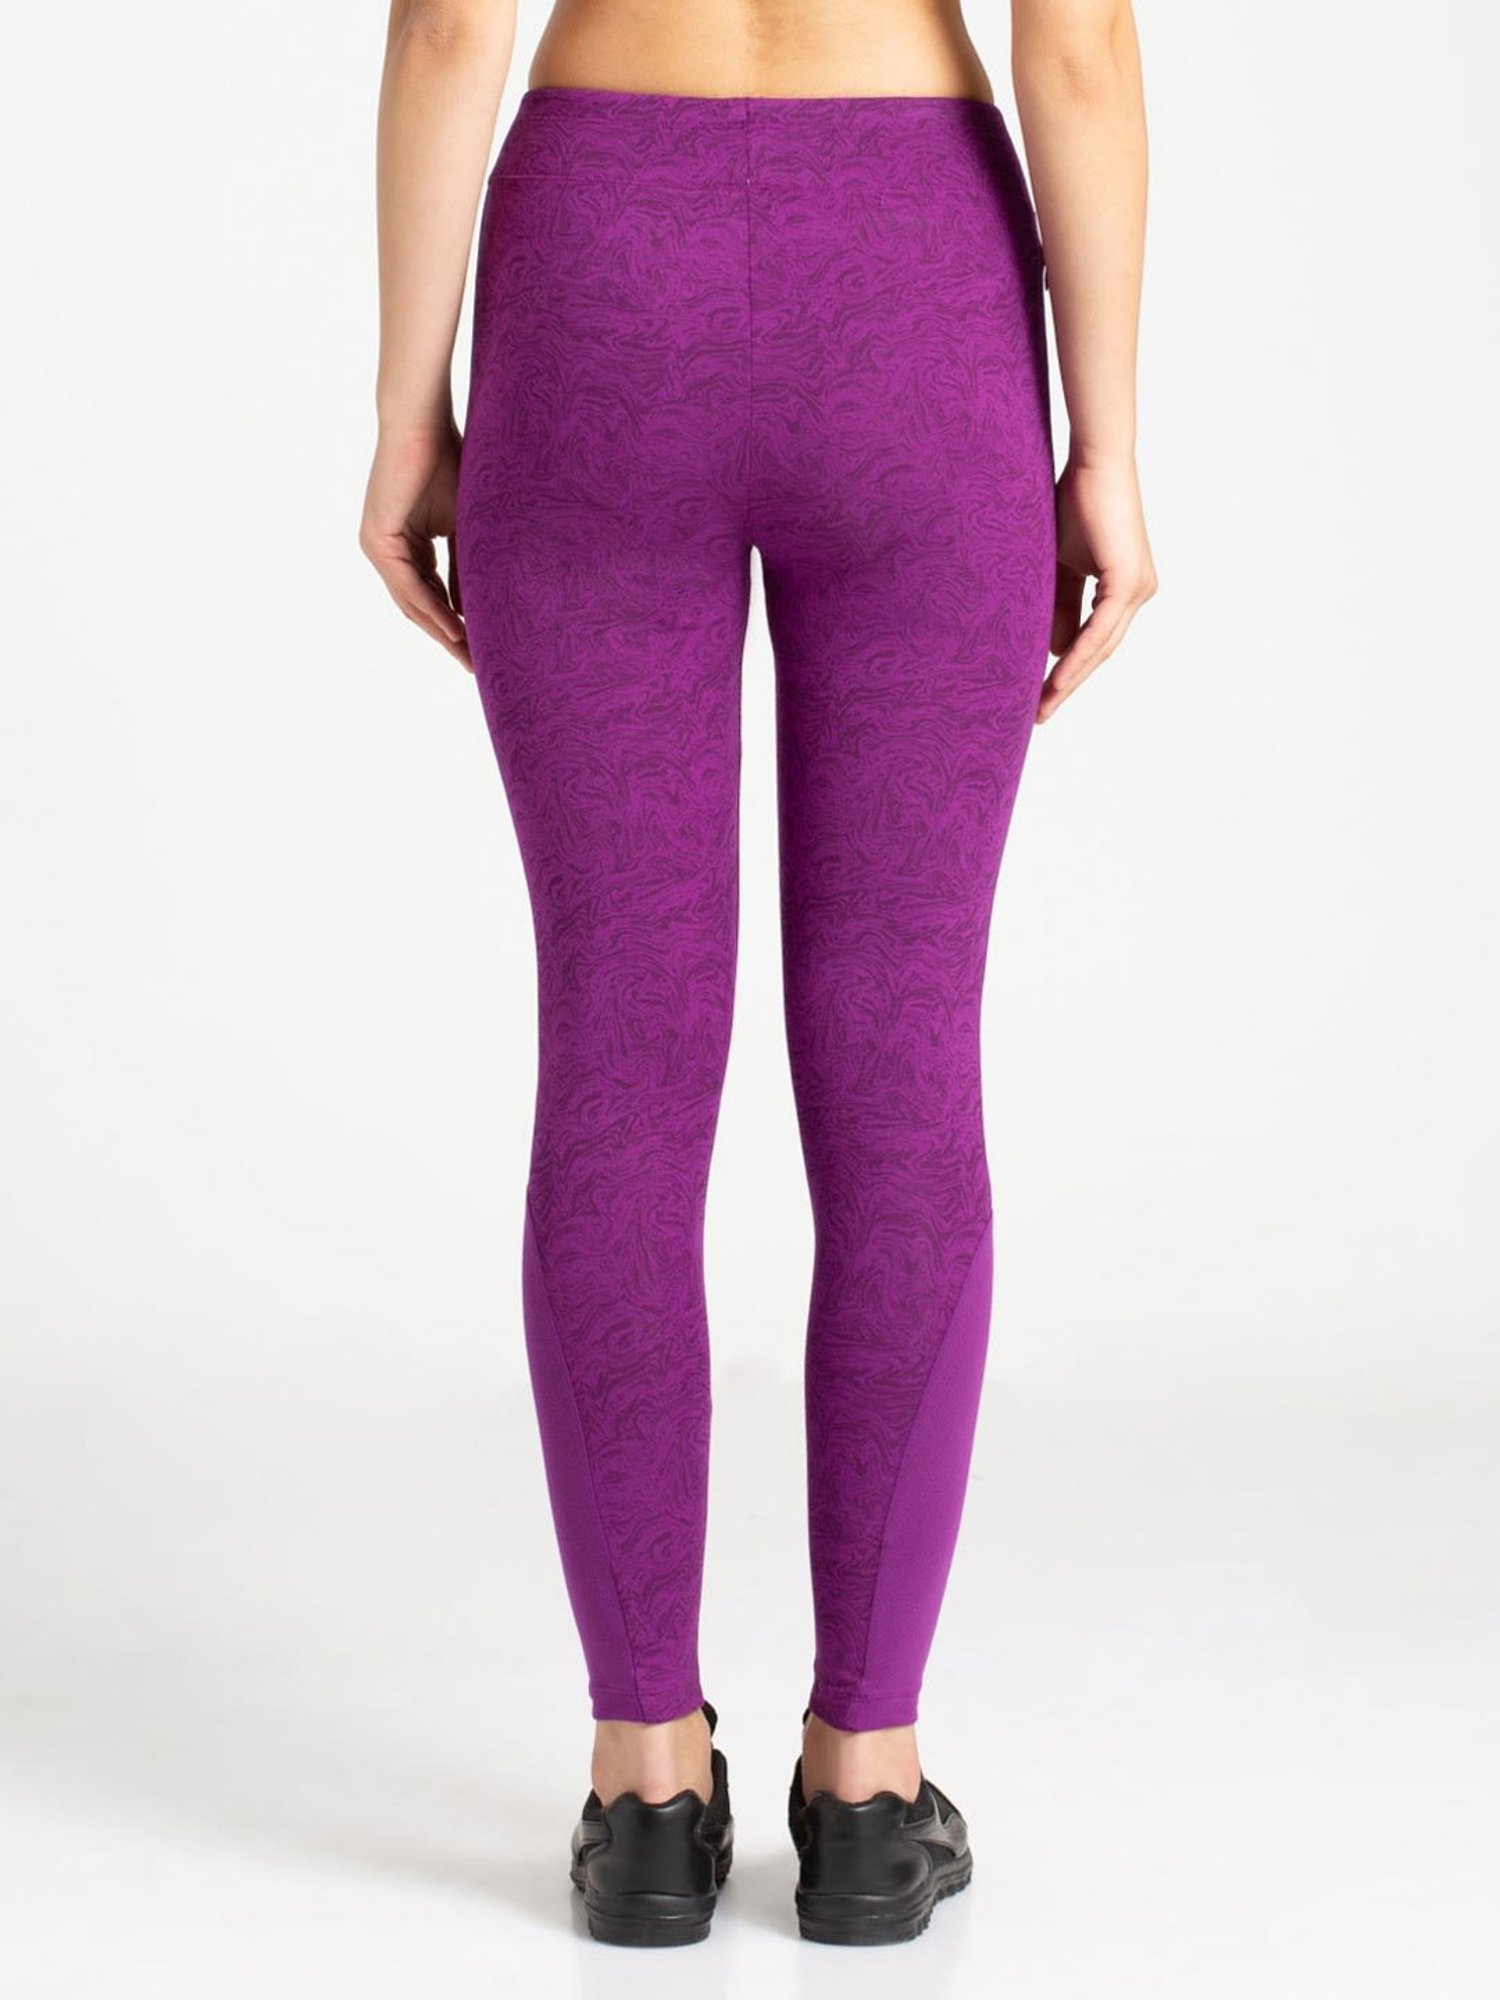 Buy Purple Leggings for Women by Twin Birds Online | Ajio.com